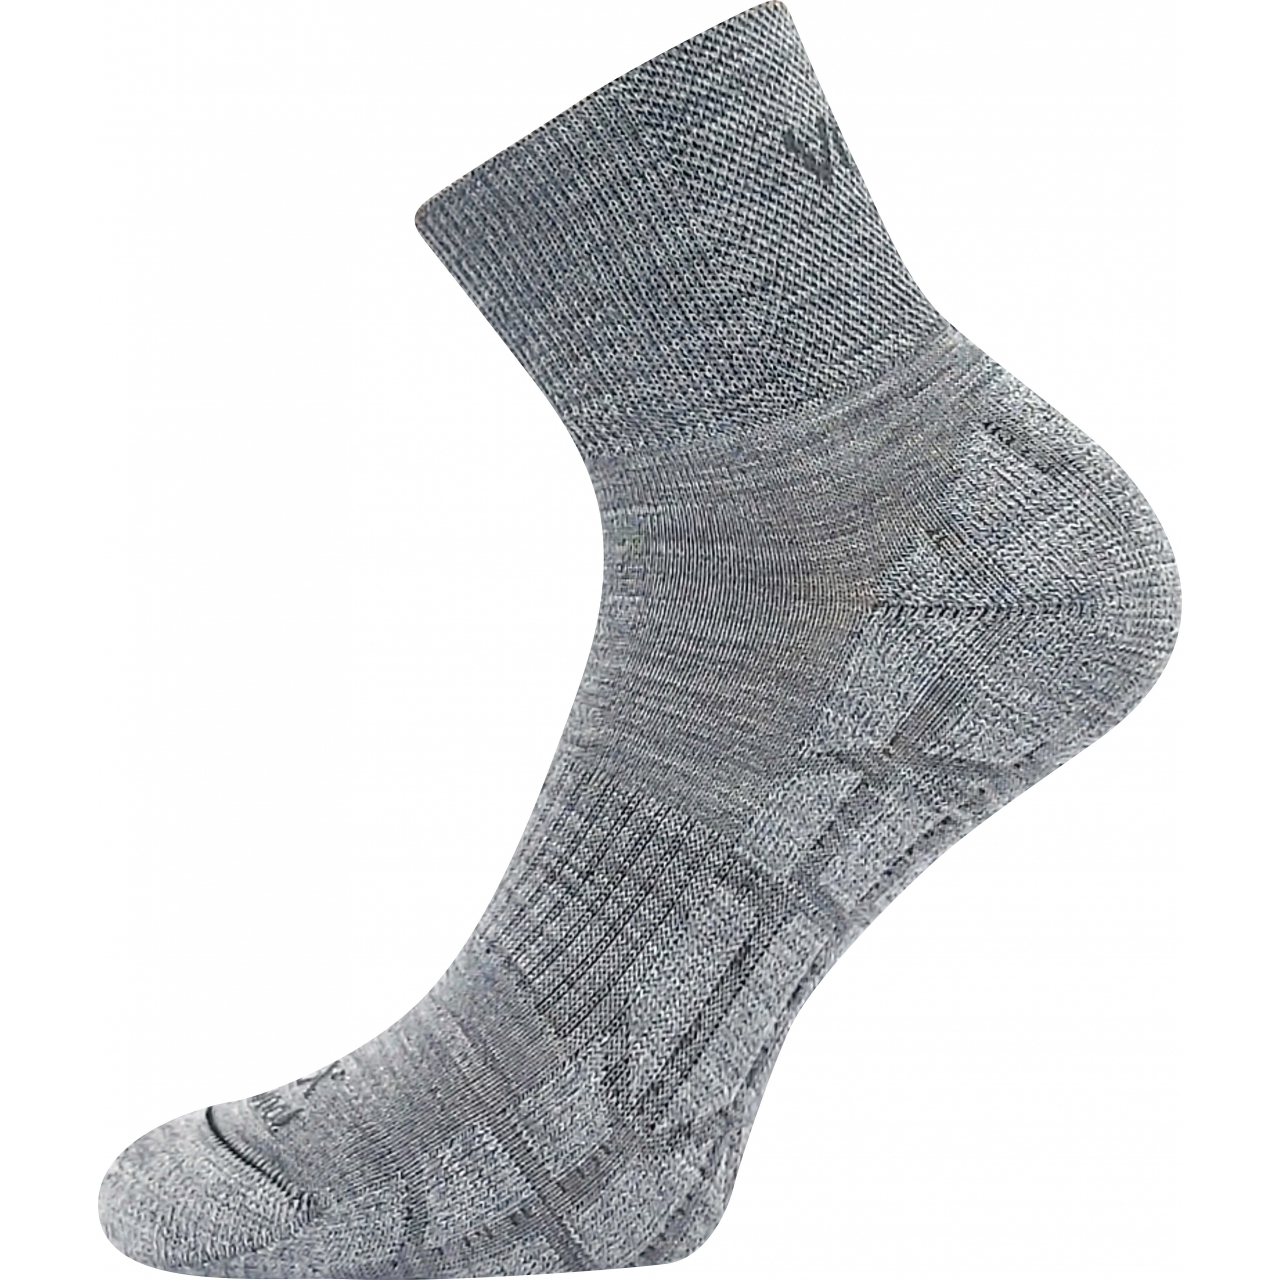 Ponožky unisex sportovní Voxx Twarix short - světle šedé, 39-42